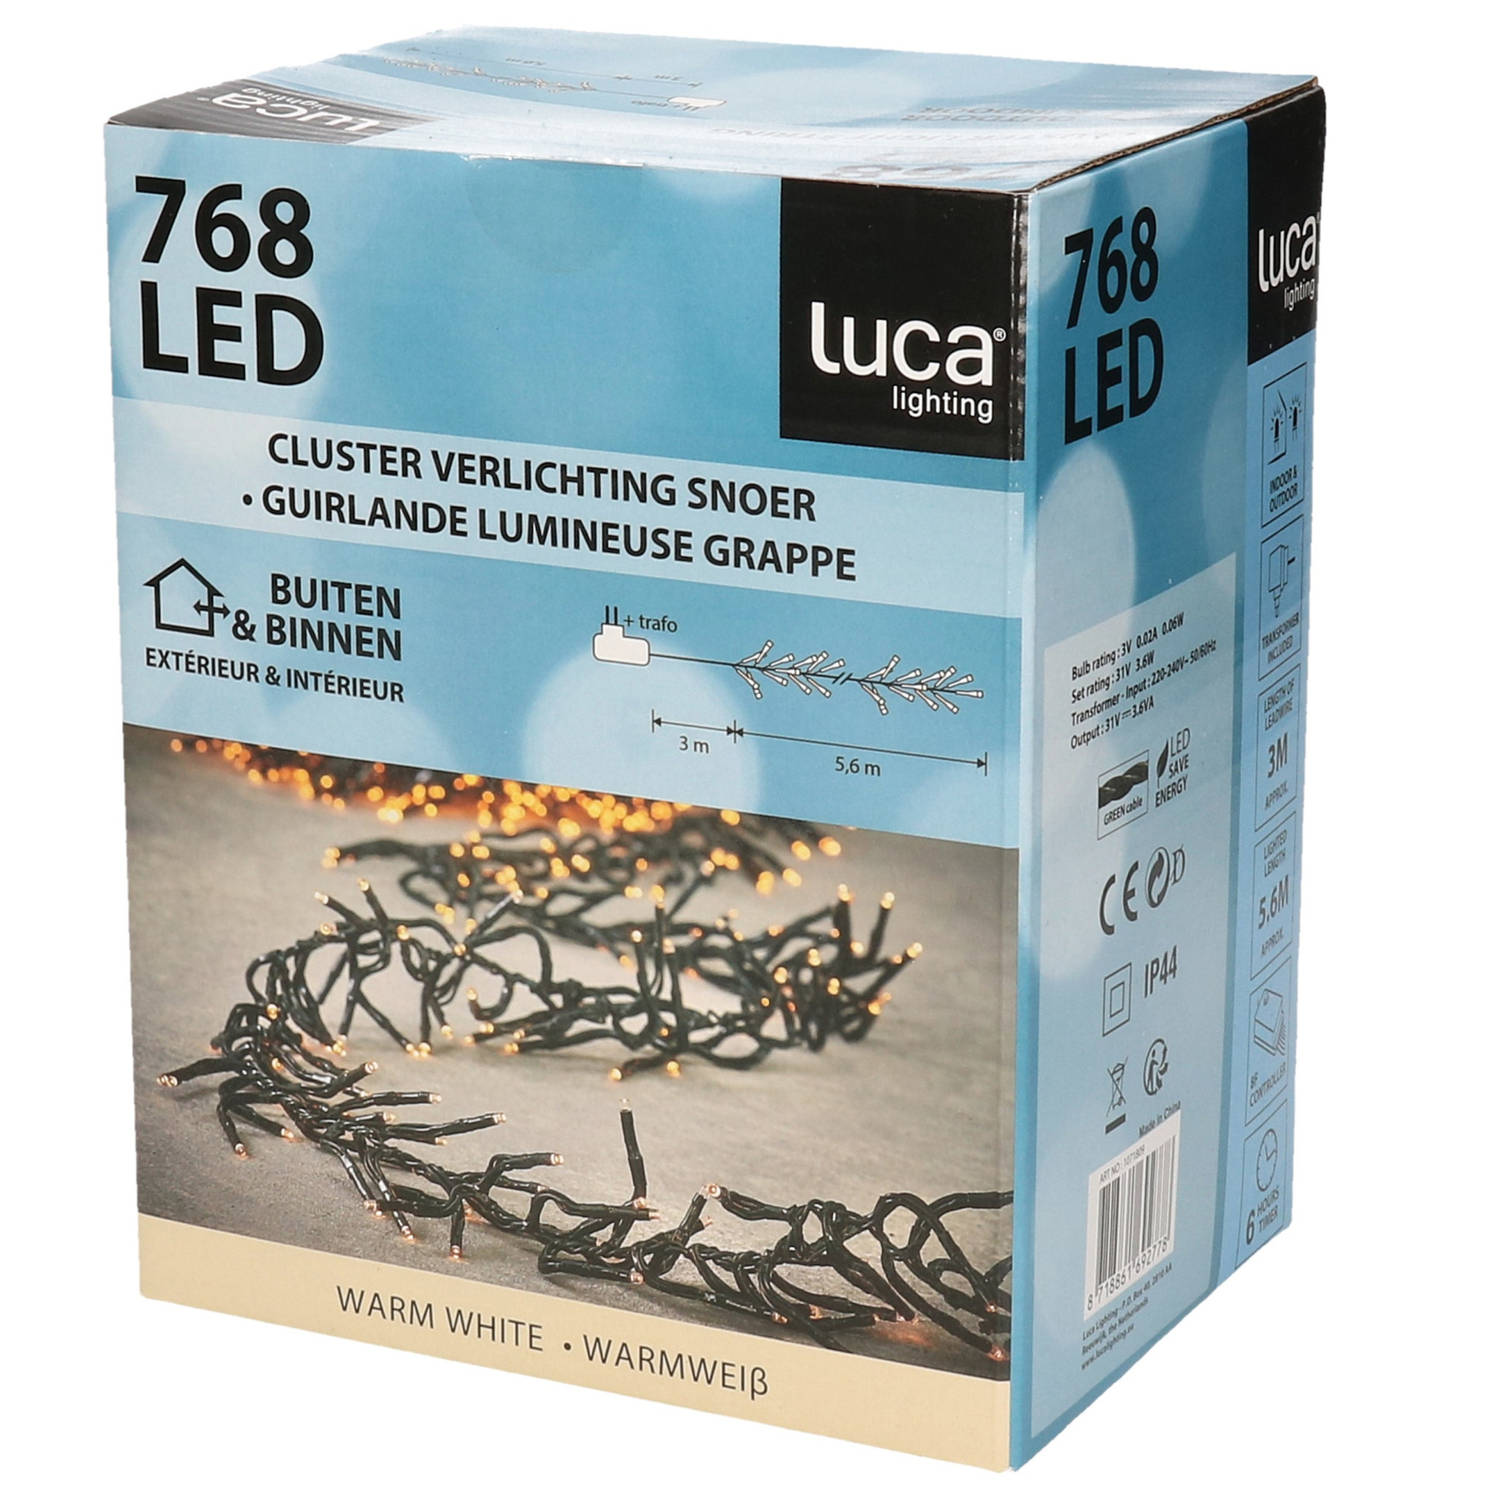 Luca Lighting LED Kerstverlichting Cluster Binnen 560cm 768 leds 2300K | Warm Wit Incl. Controller e